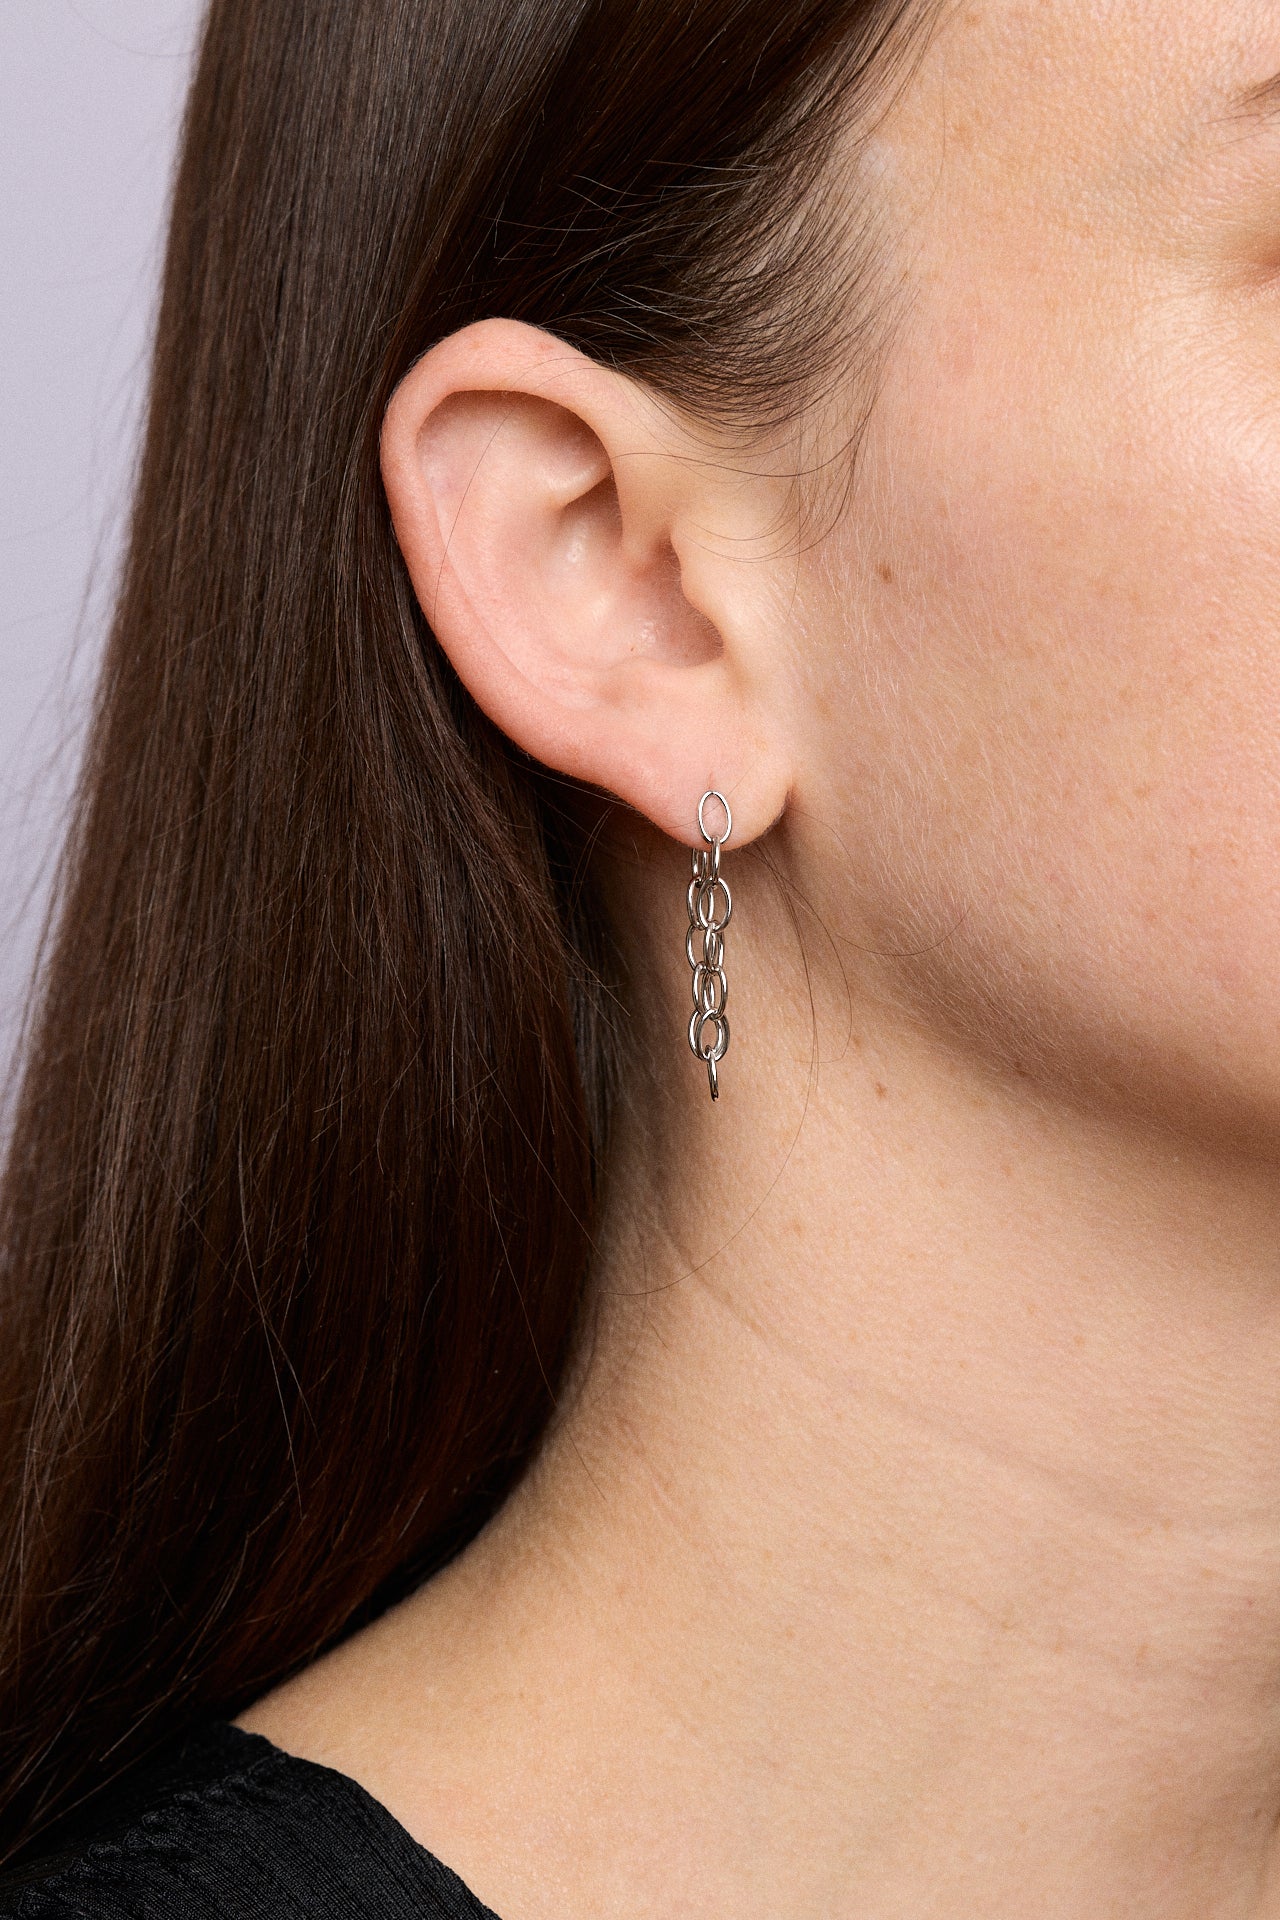 Bianca Mavrick Jewellery Model wears Fine Chain Earring